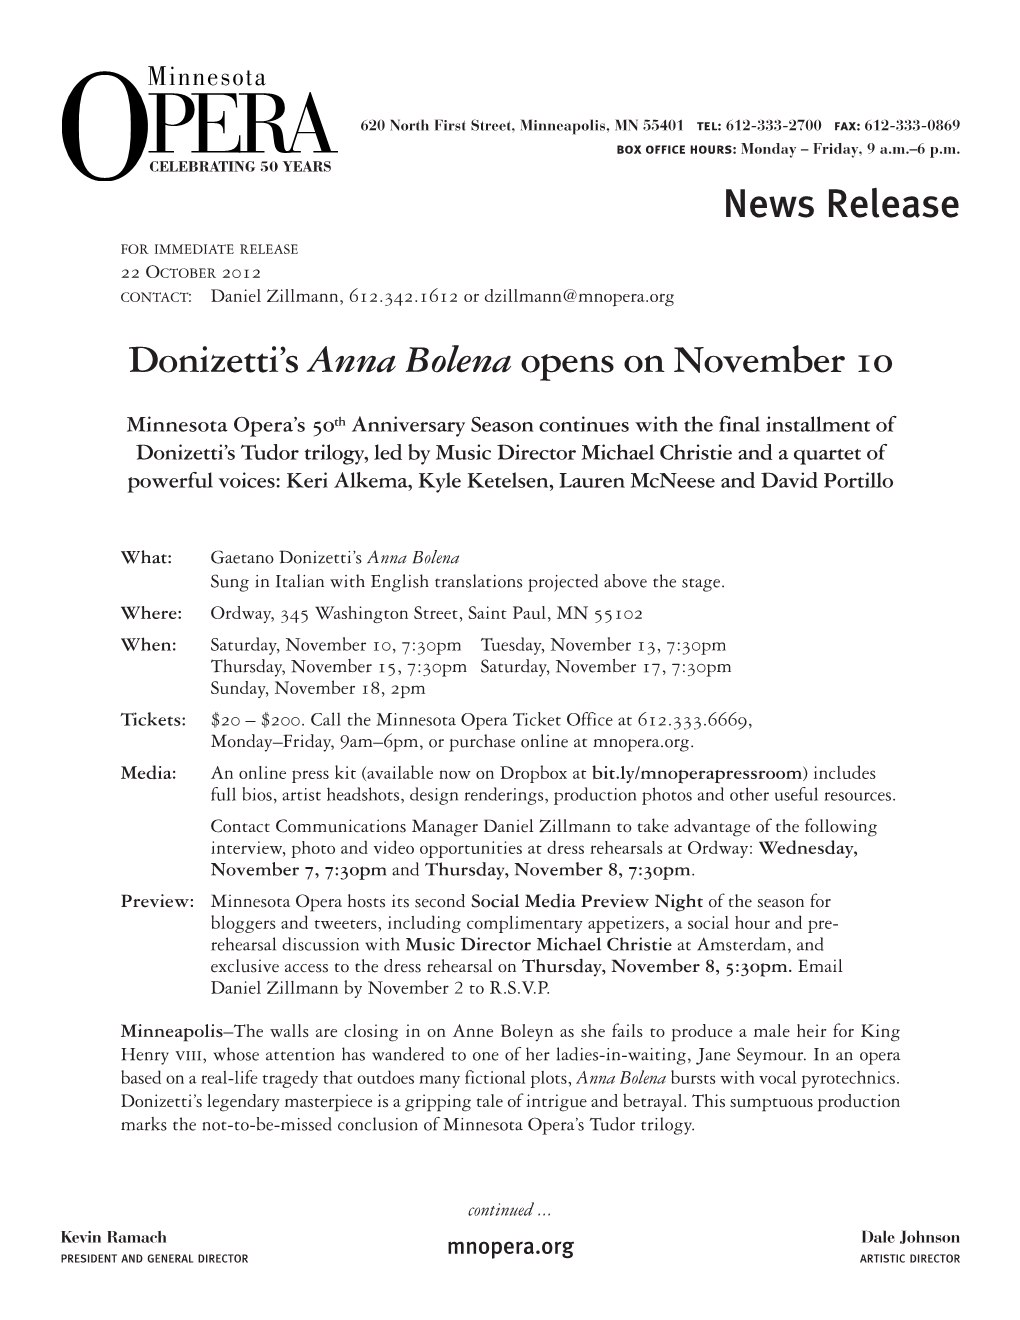 Donizetti's Anna Bolena Opens on November 10